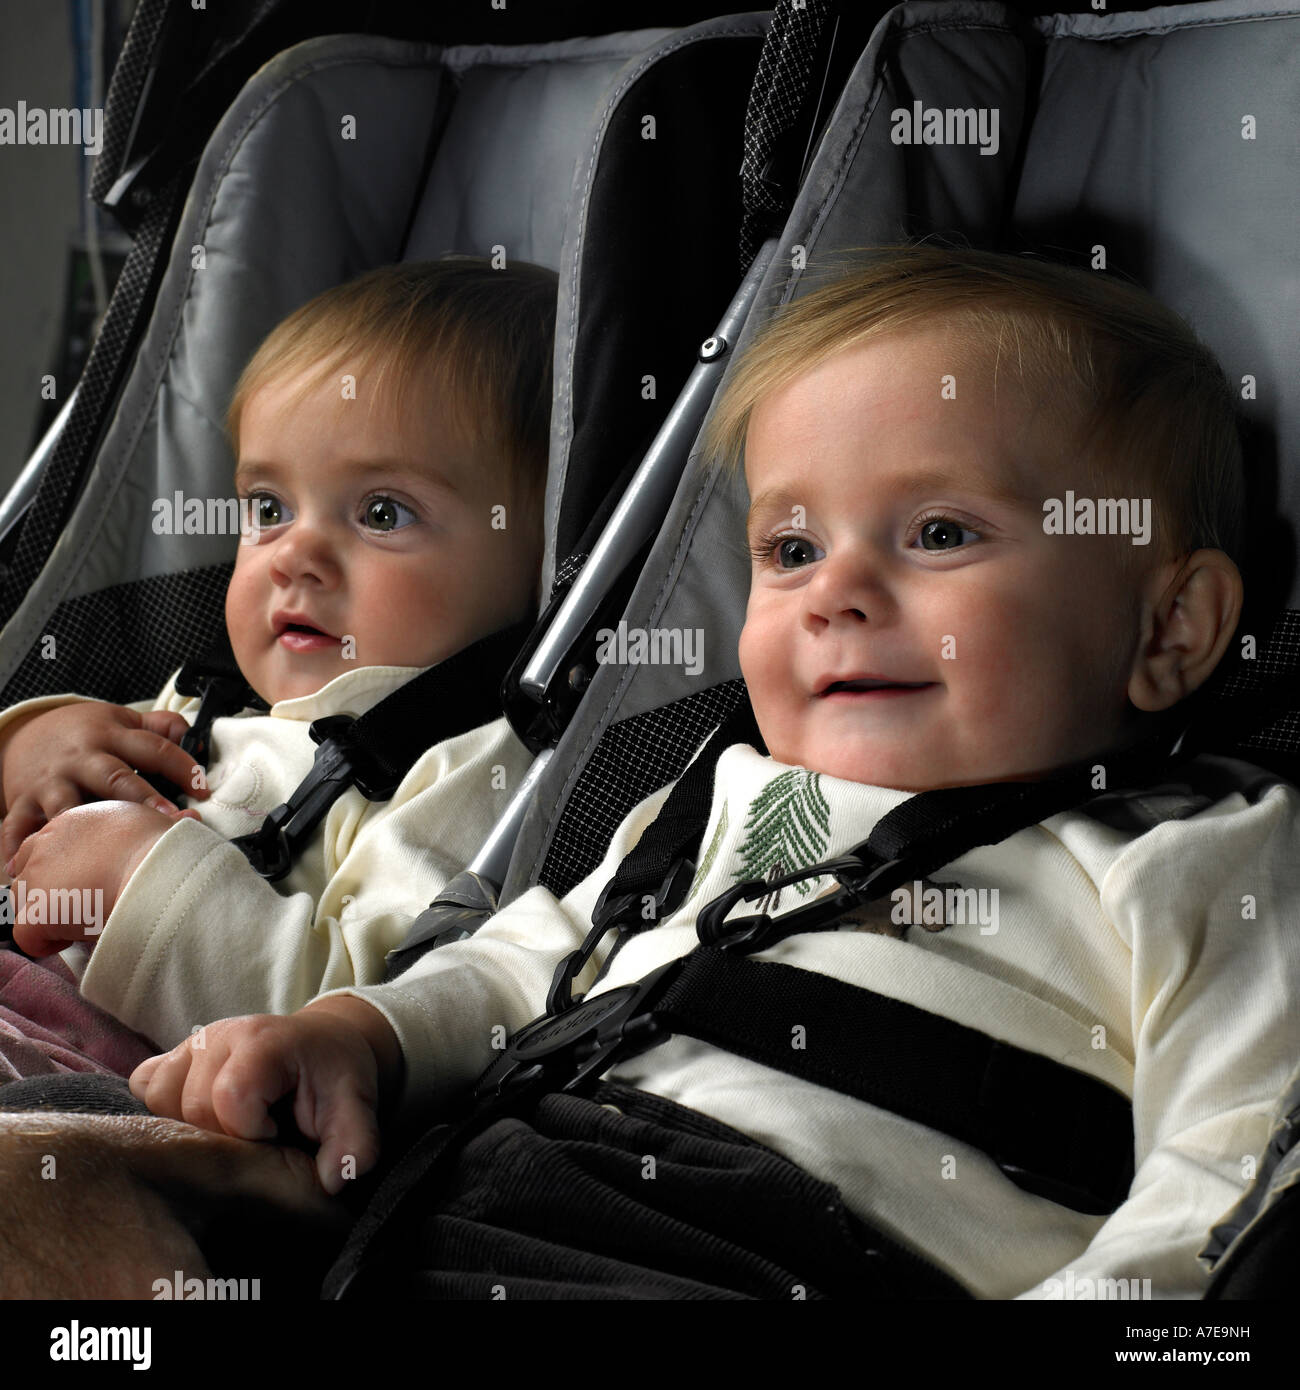 Zwei Babys im Kinderwagen Stockfotografie - Alamy